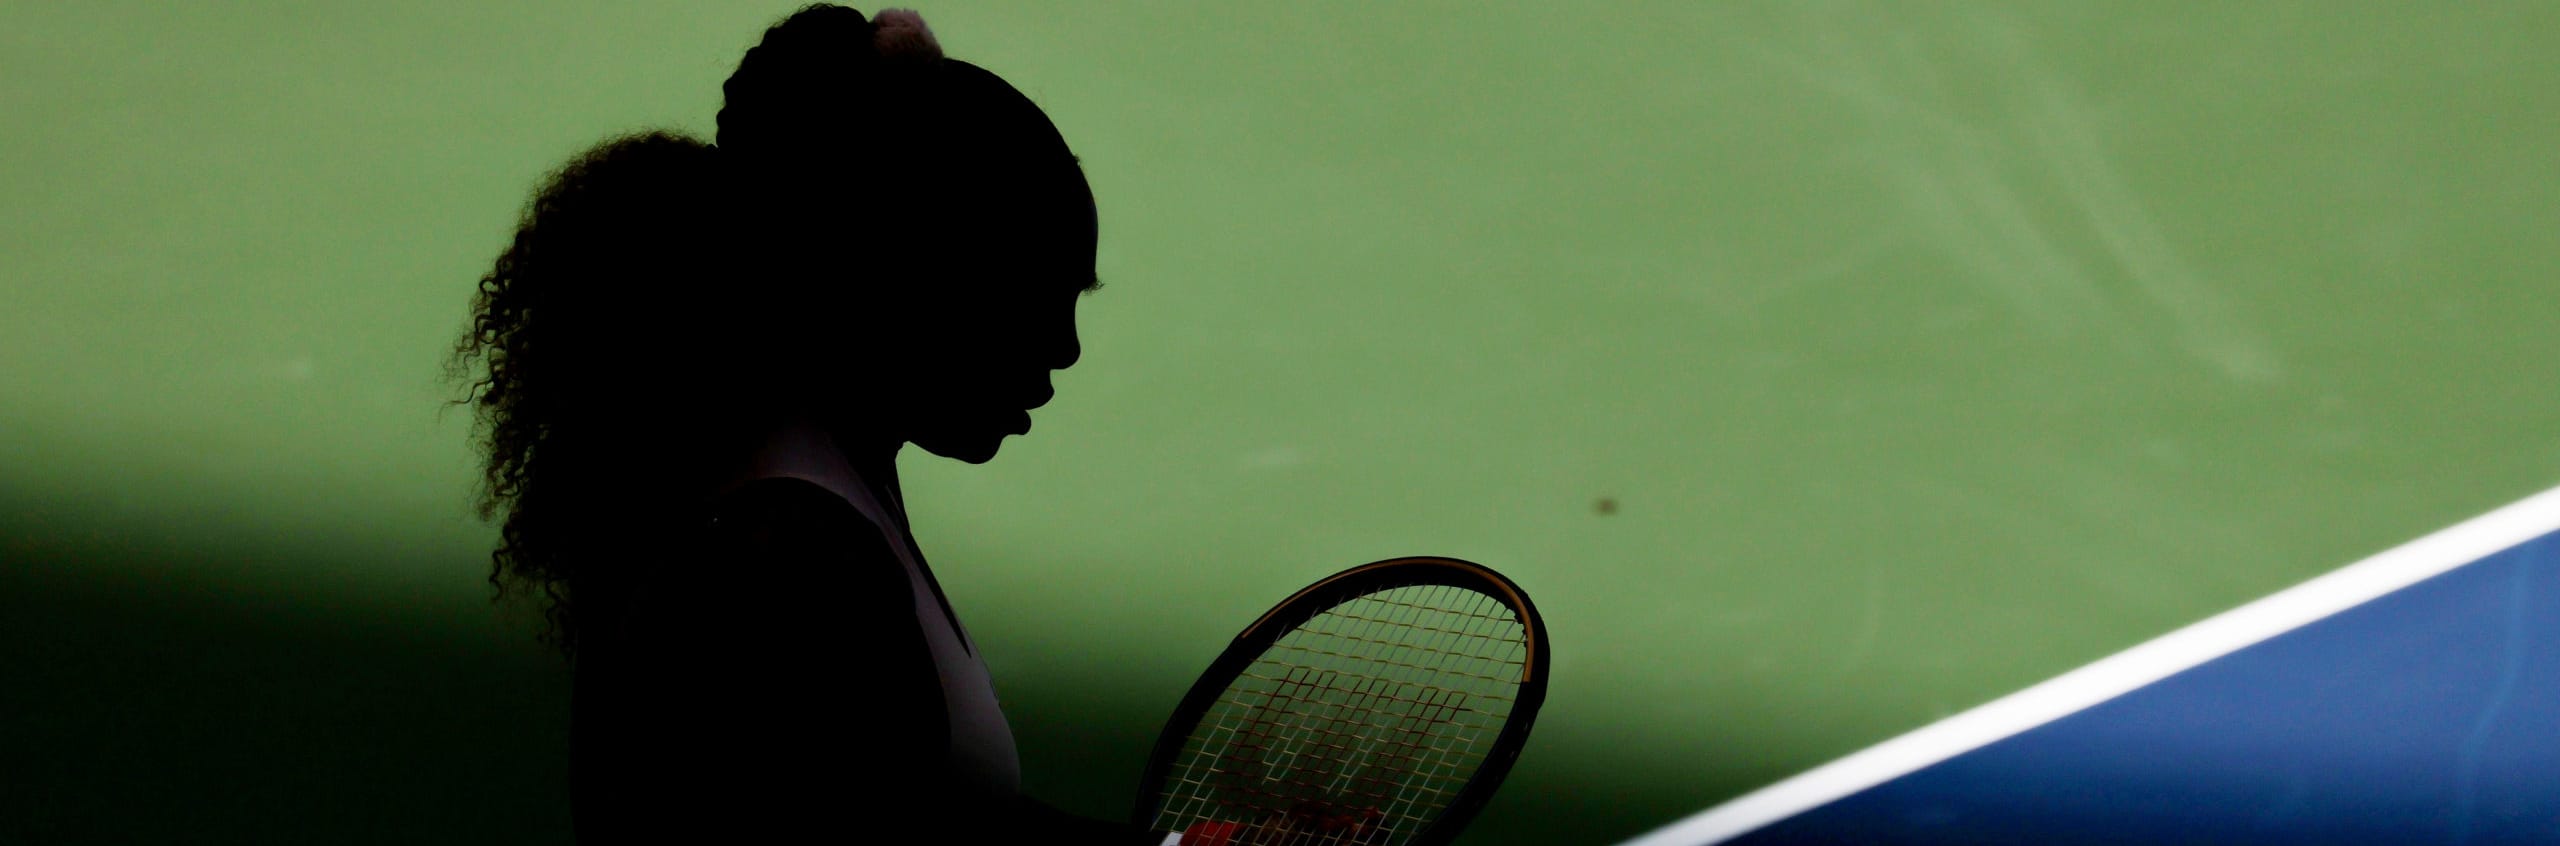 Pronostici e quote US Open: Serena per l'ennesima semifinale, 4 consigli per il day 10